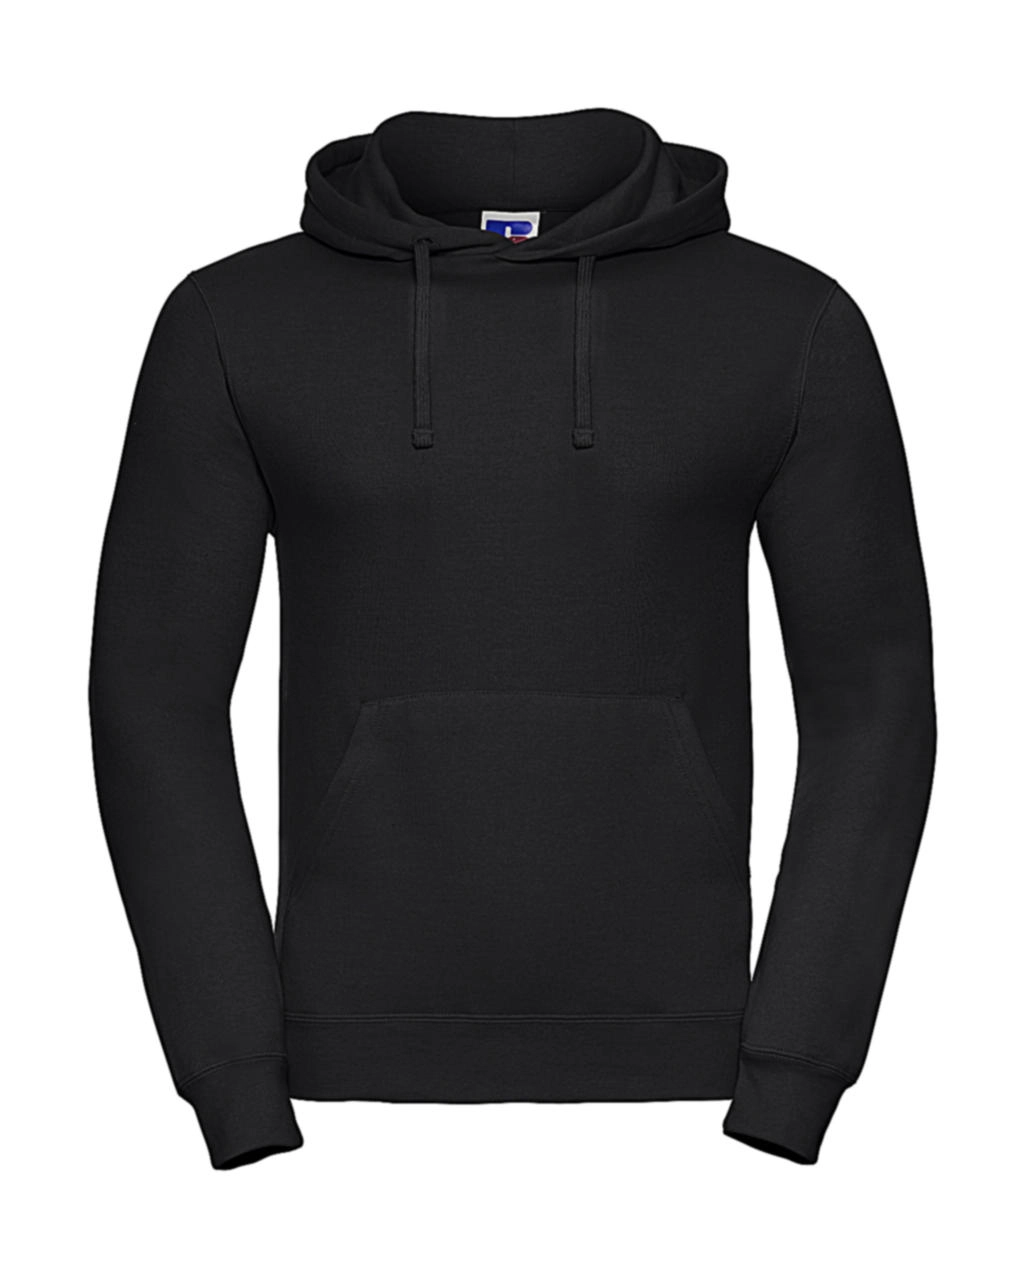 Hooded Sweatshirt zum Besticken und Bedrucken in der Farbe Black mit Ihren Logo, Schriftzug oder Motiv.